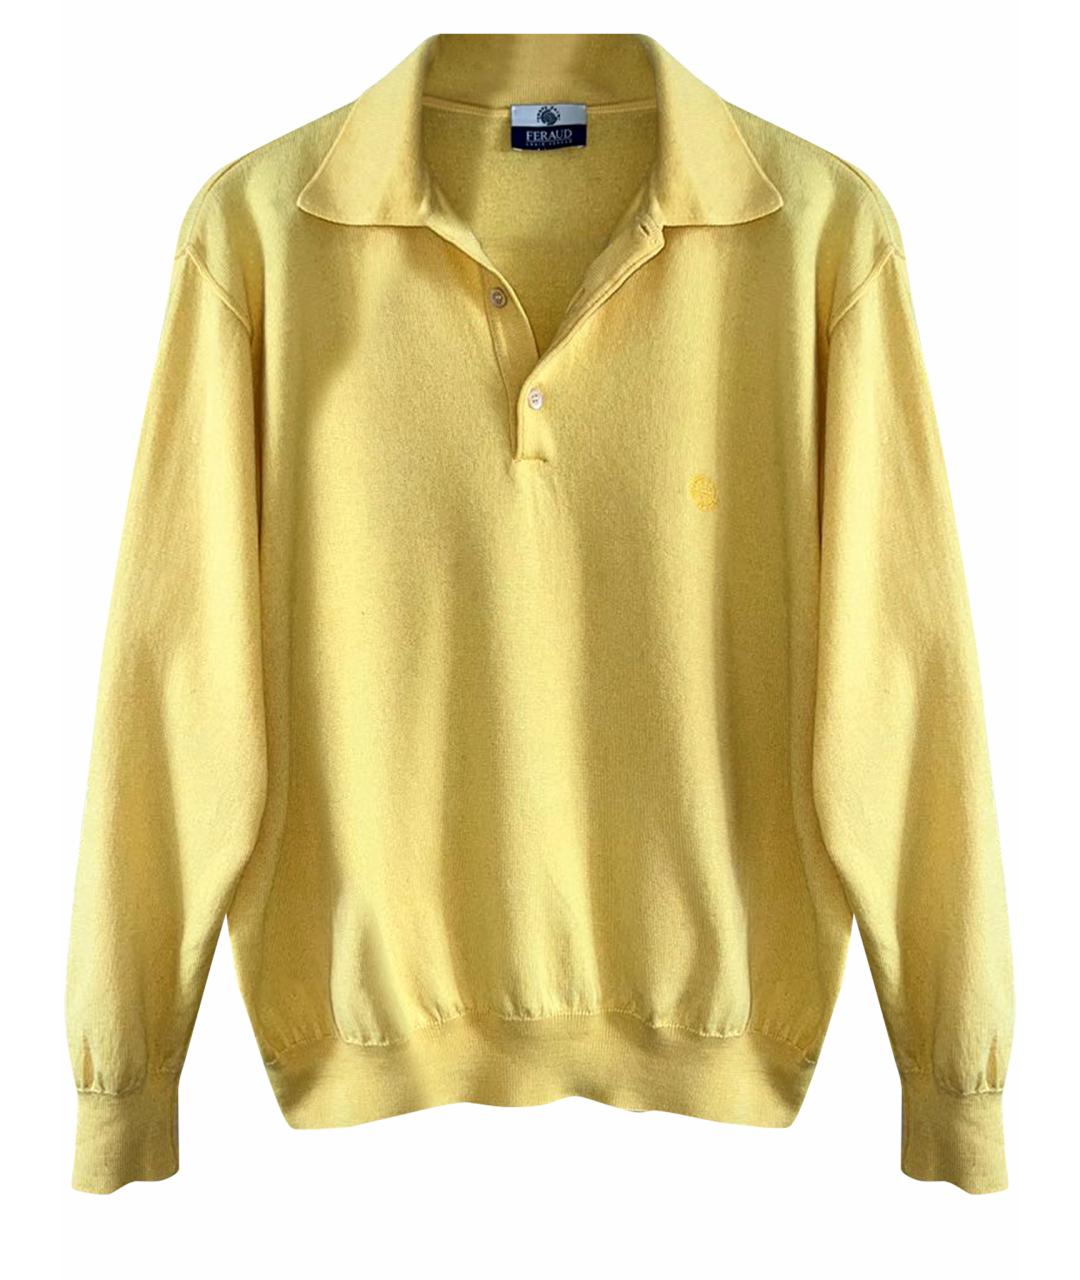 LOUIS FERAUD Желтый шерстяной джемпер / свитер, фото 1